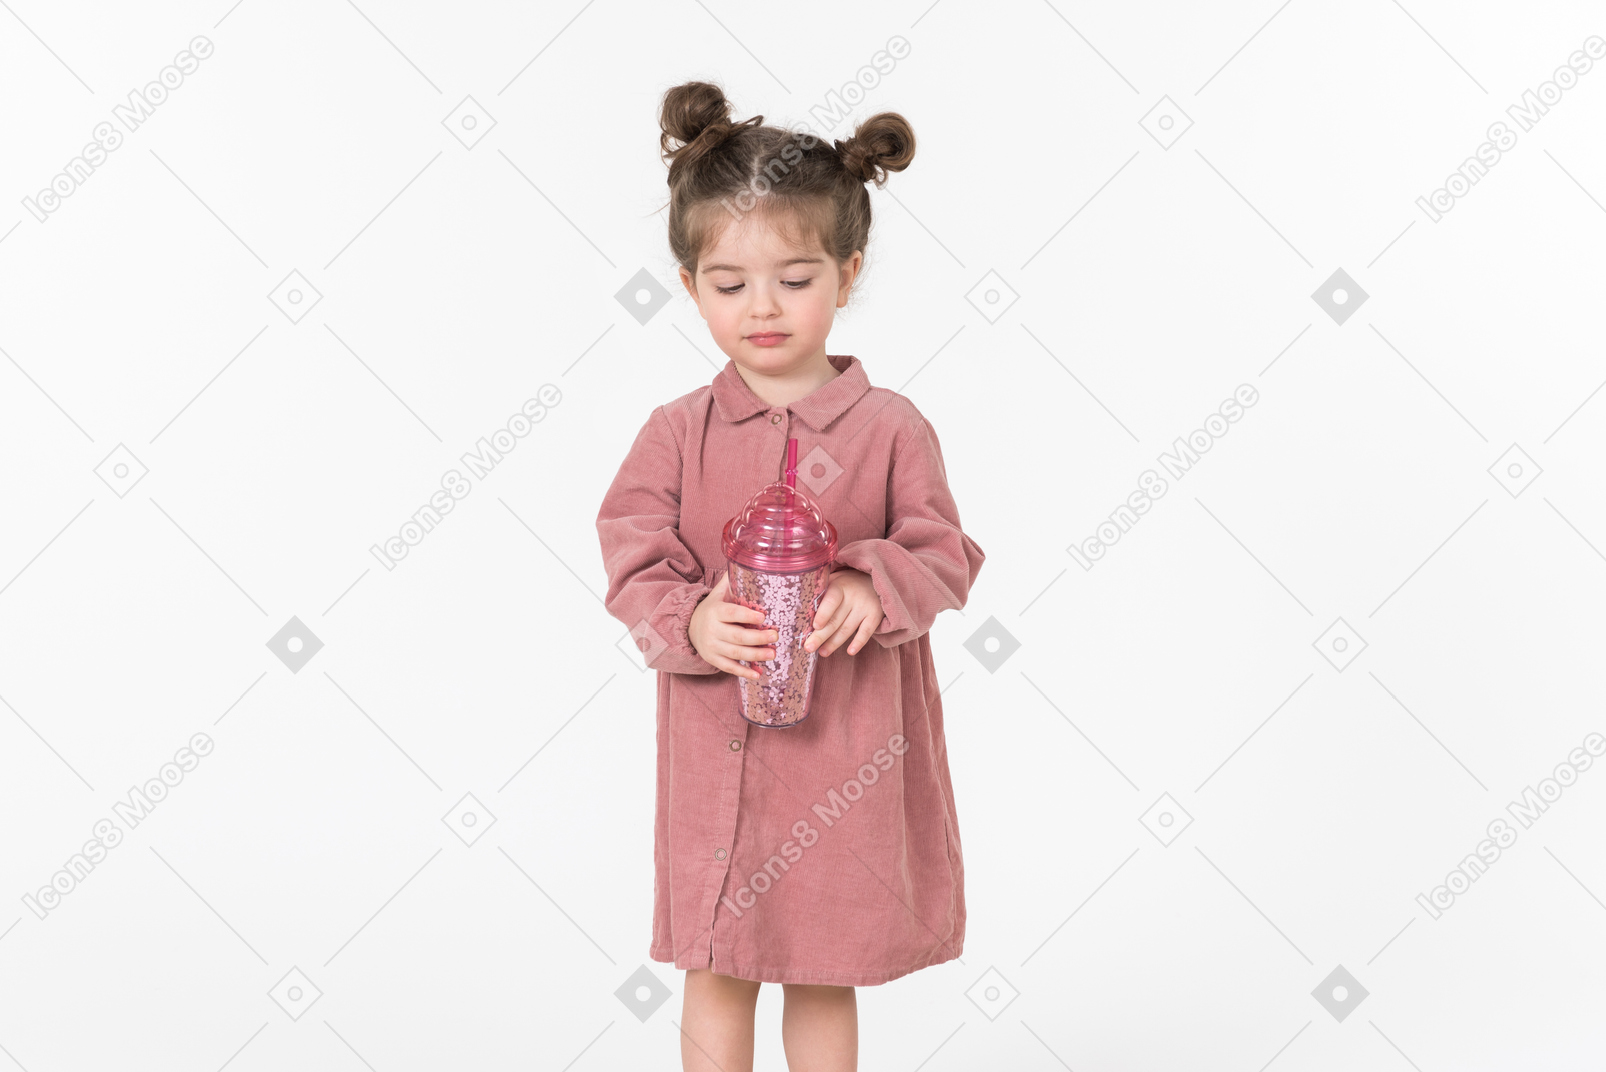 ピンクのプラスチック製のコップを持って小さな子供の女の子